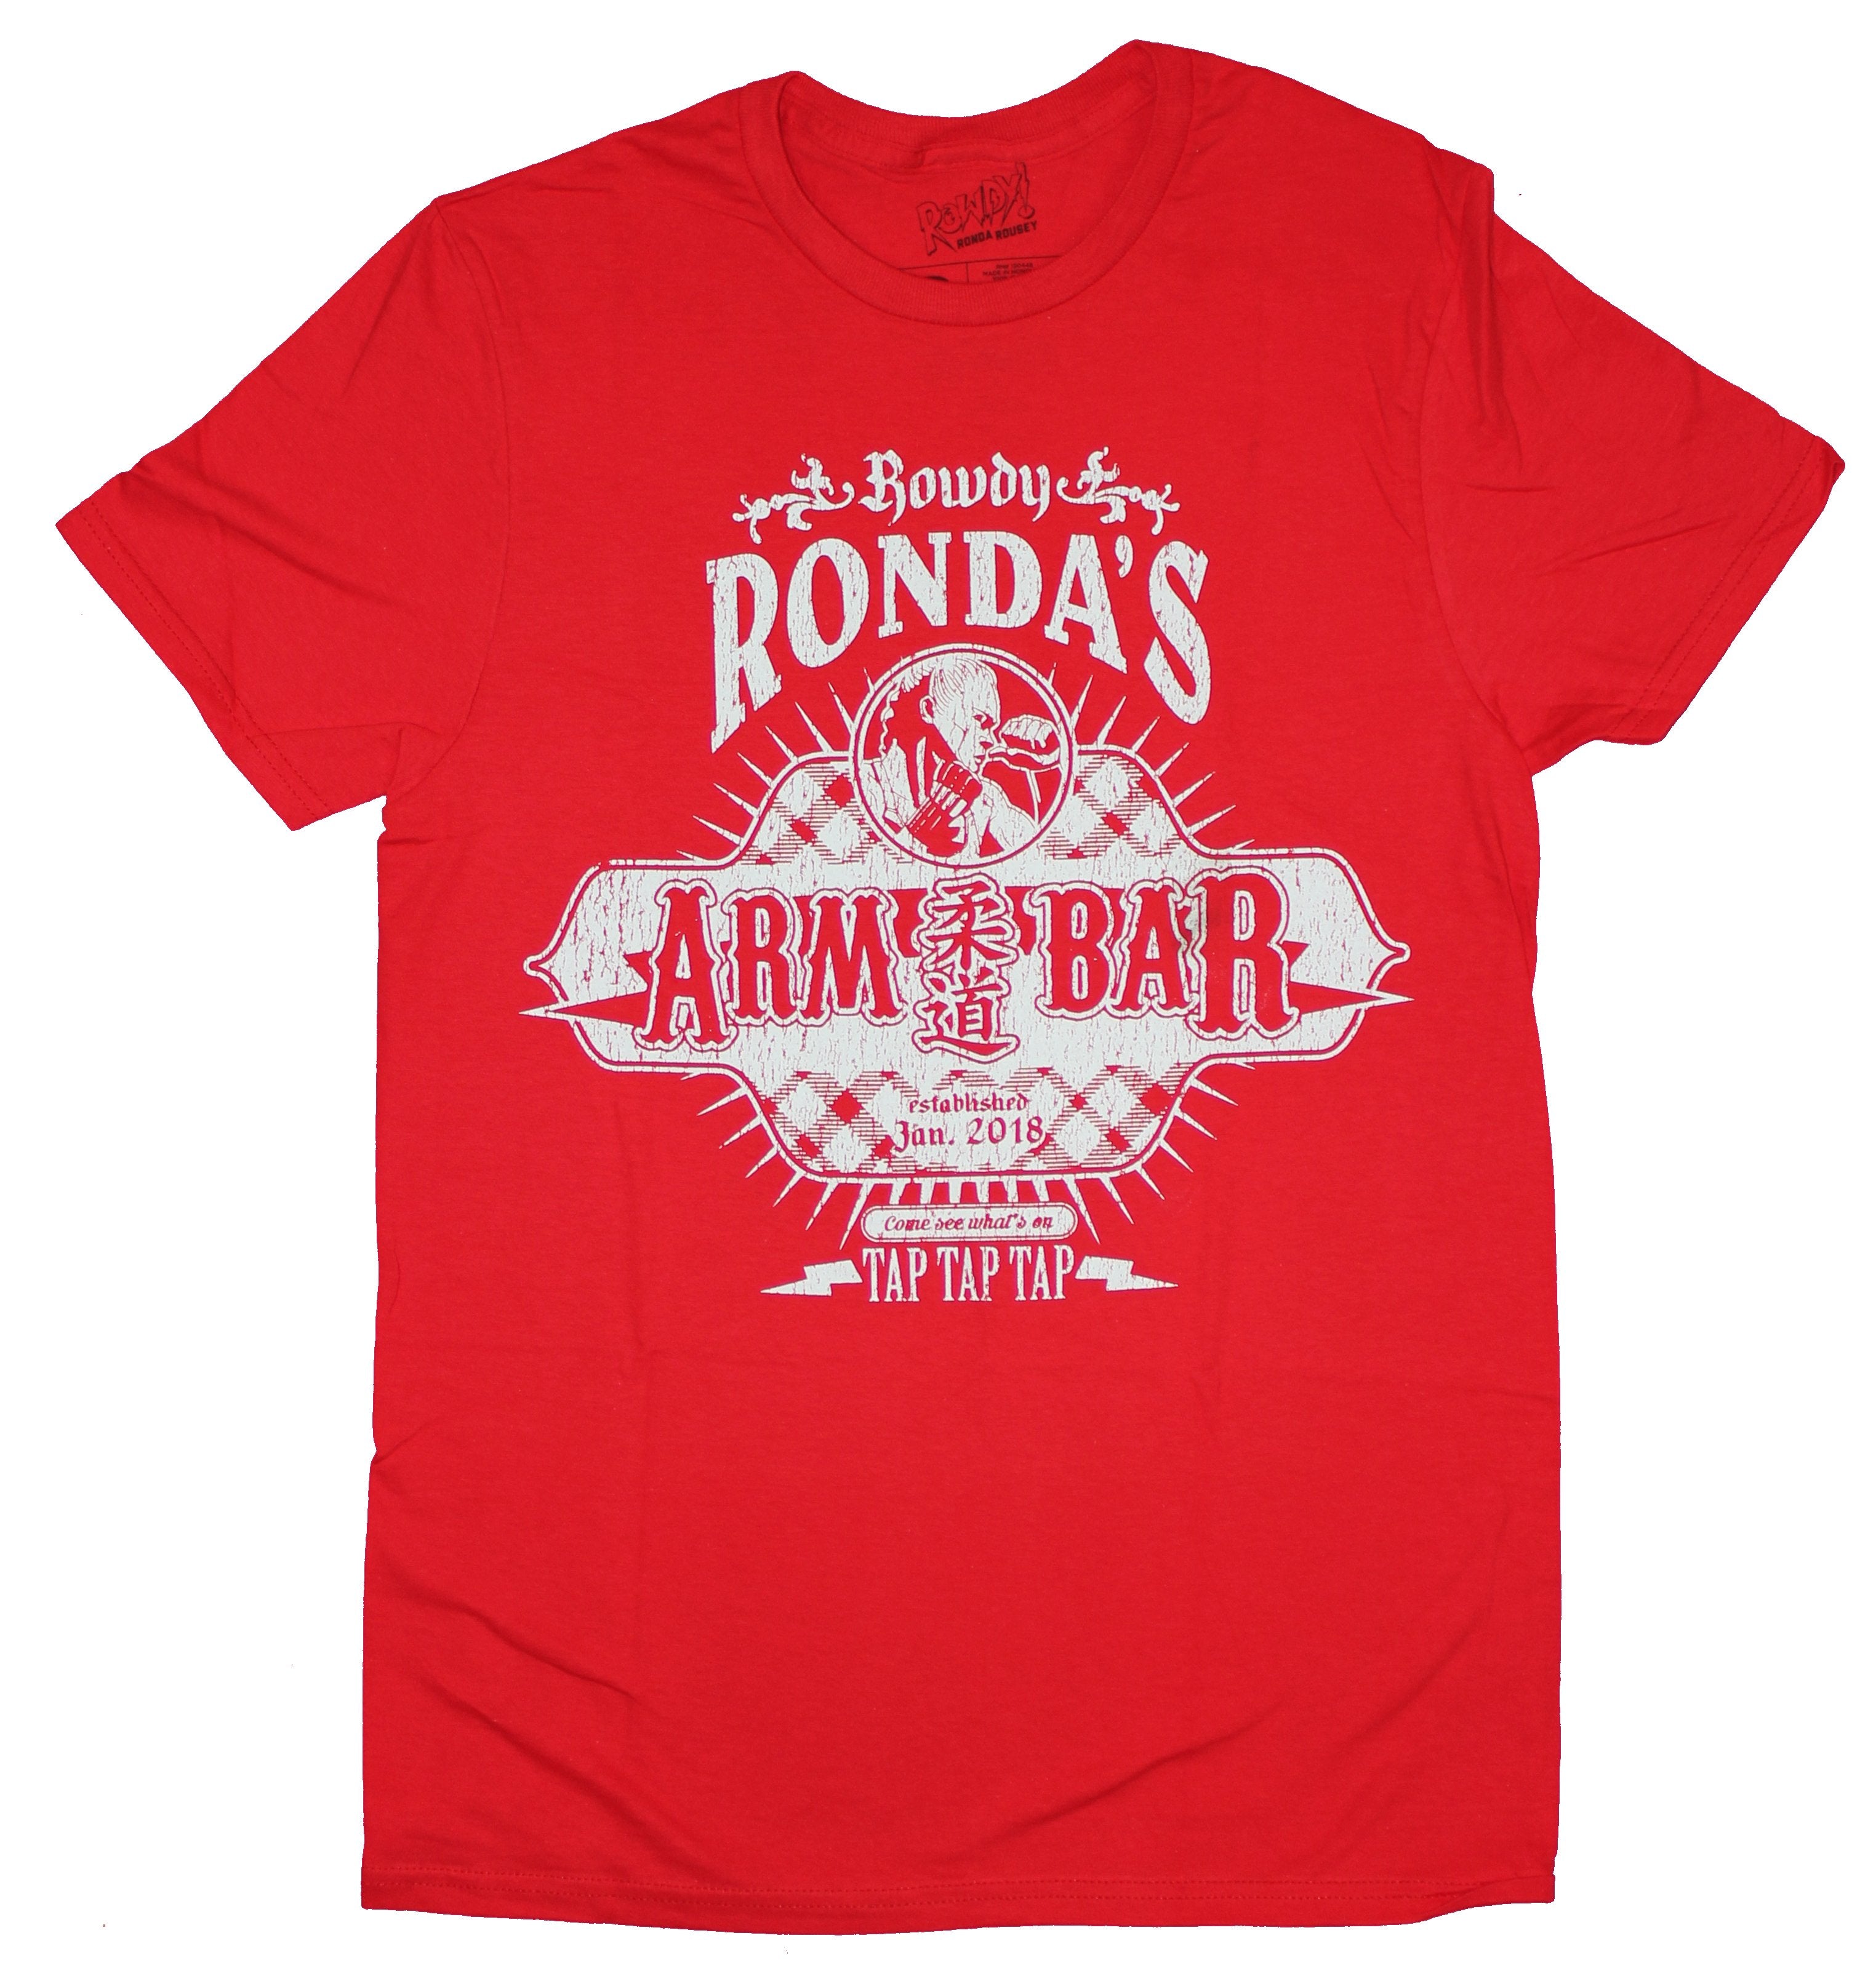 Rhonda Rousey Mens  T-Shirt- Rowdy Rhonda's Arm Bar Tap Tap Tap